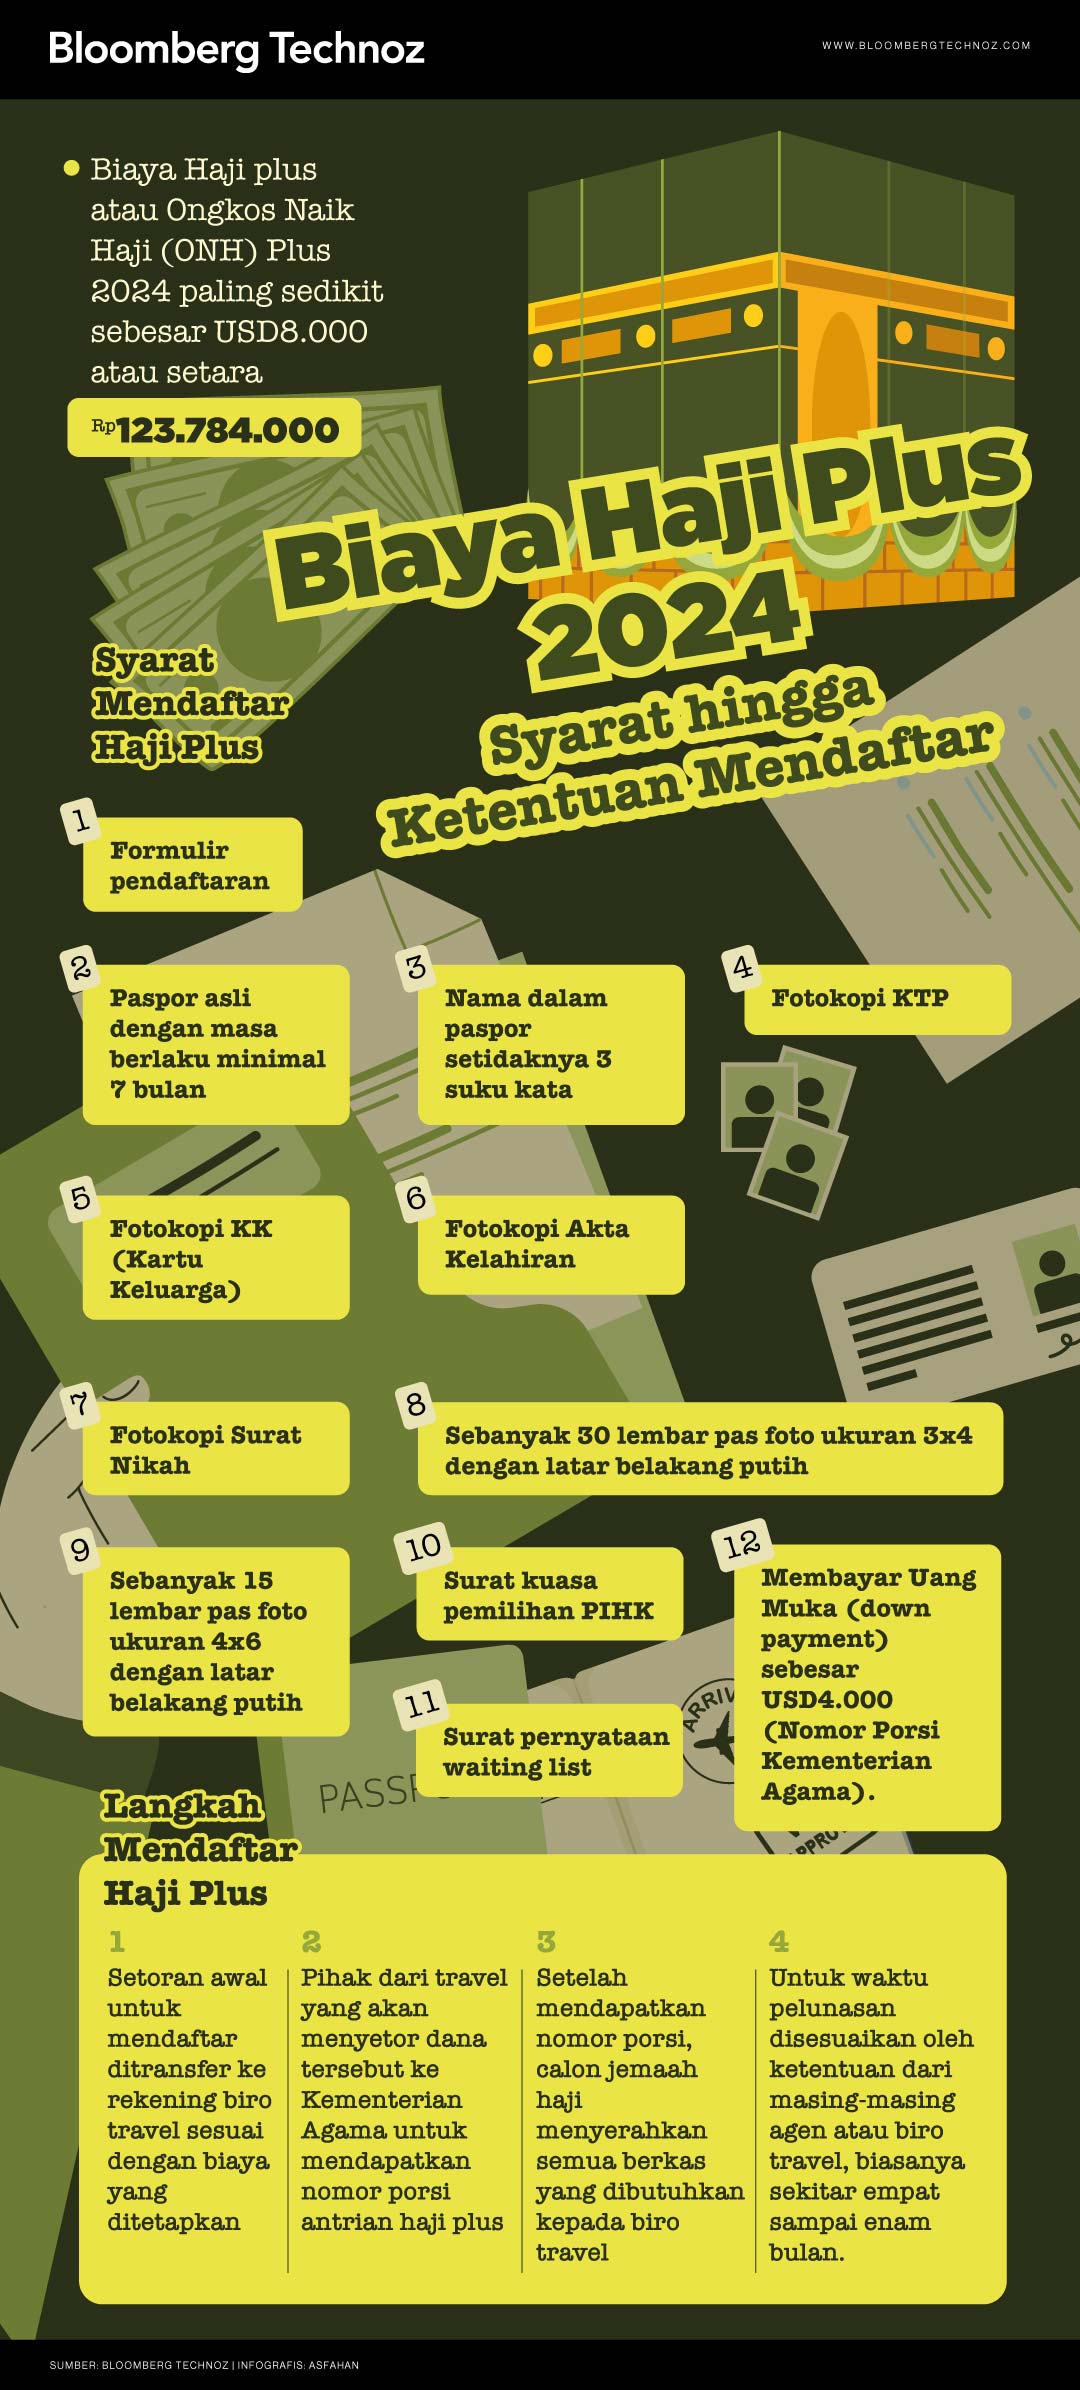 Infografis Biaya Haji Plus 2024 Syarat hingga Ketentuan Mendaftar (Asfahan/Bloomberg Technoz)